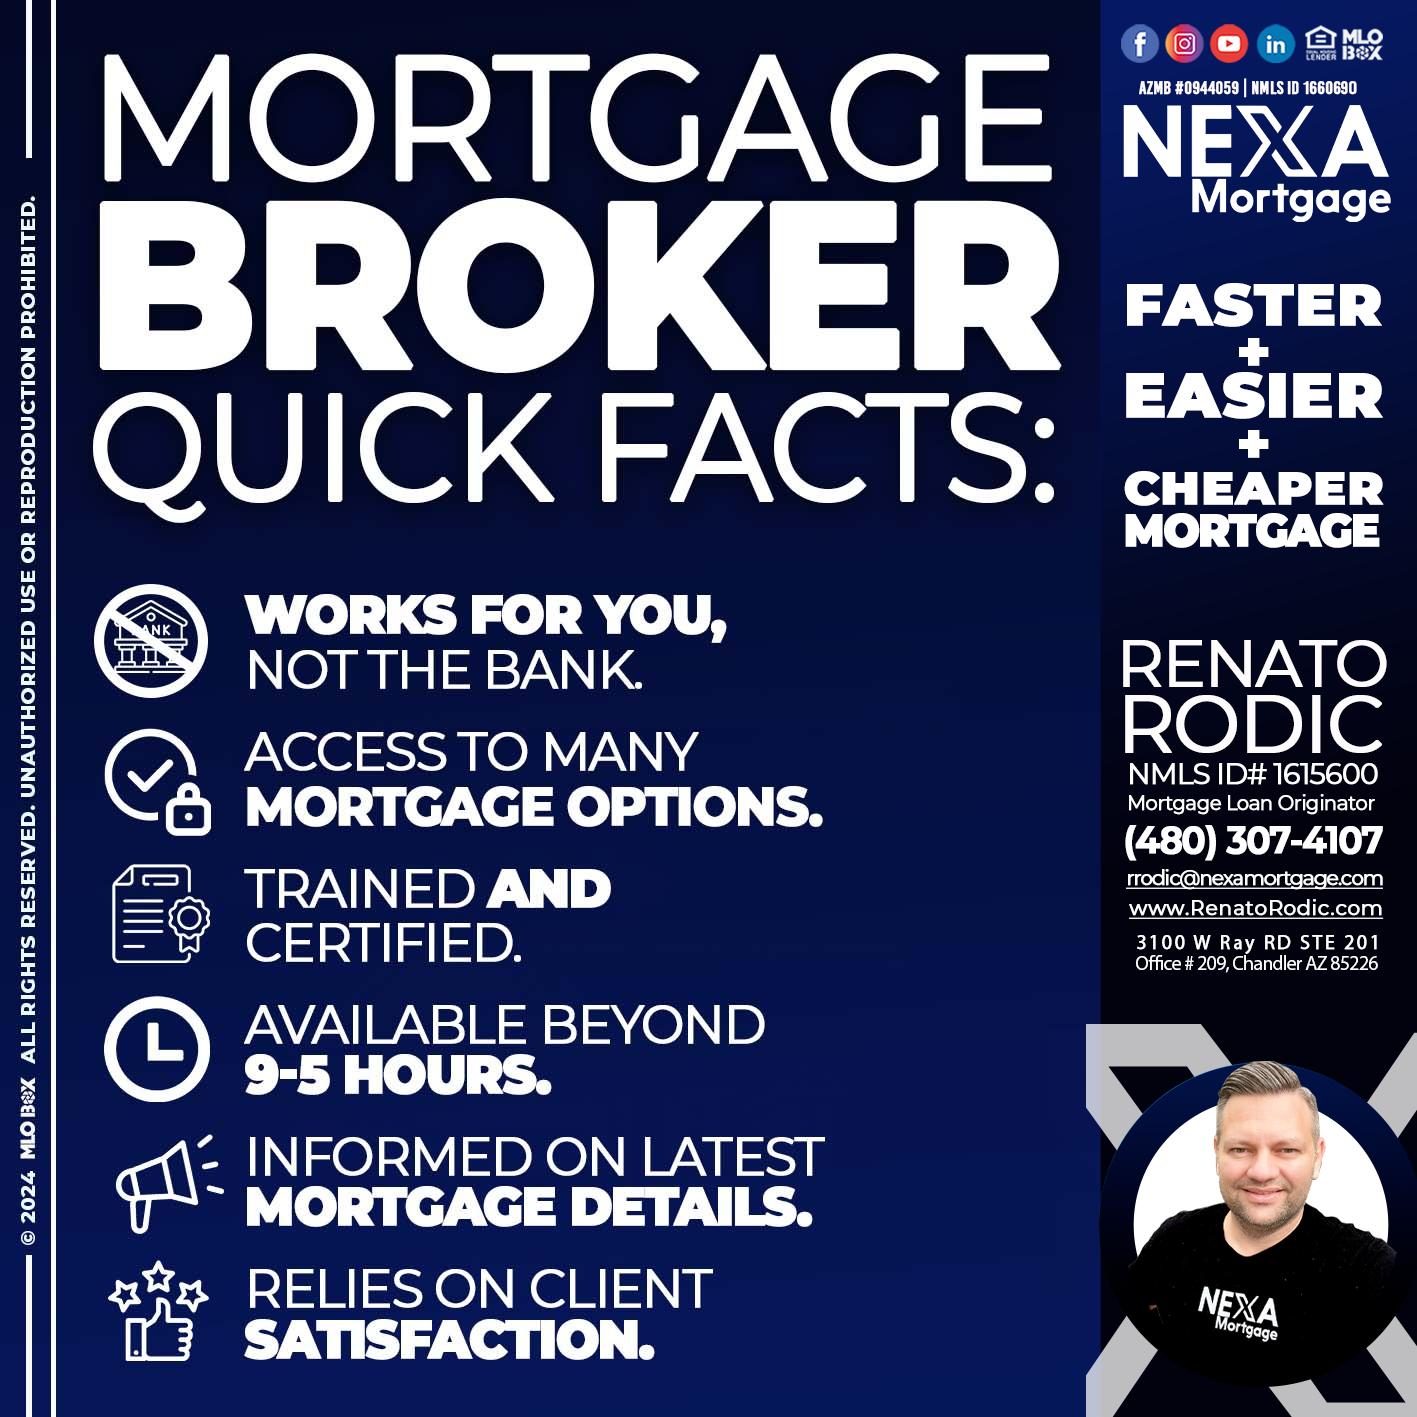 mortgage broker - Renato Rodic -Mortgage Loan Originator